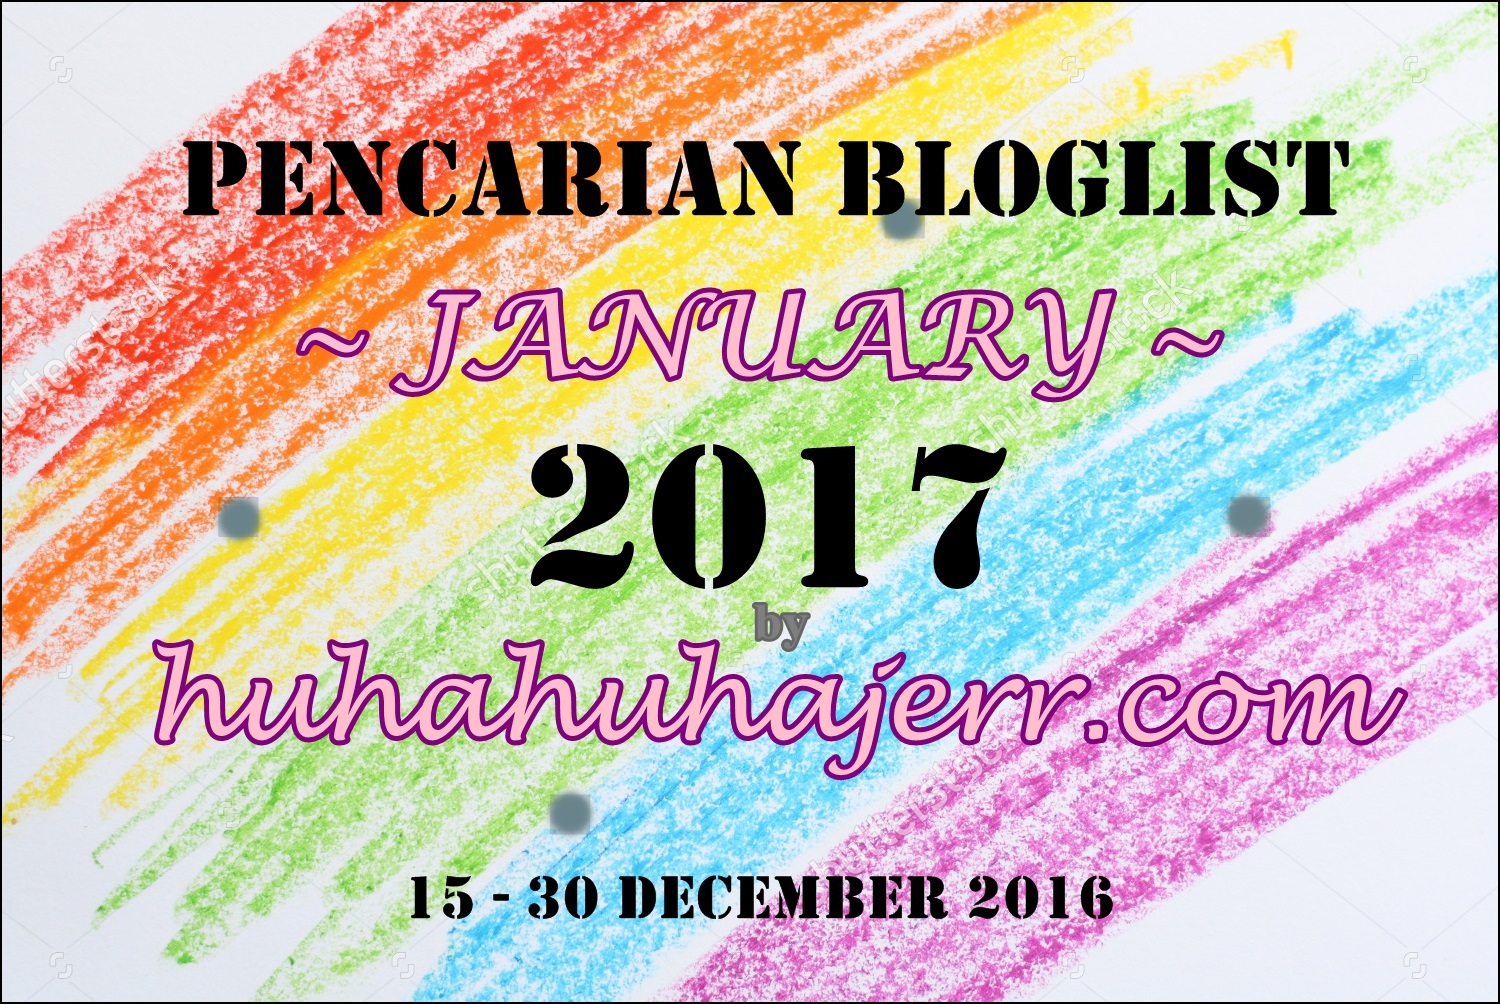 PENCARIAN BLOGLIST JANUARY 2017 by huhahuhajerr.com.